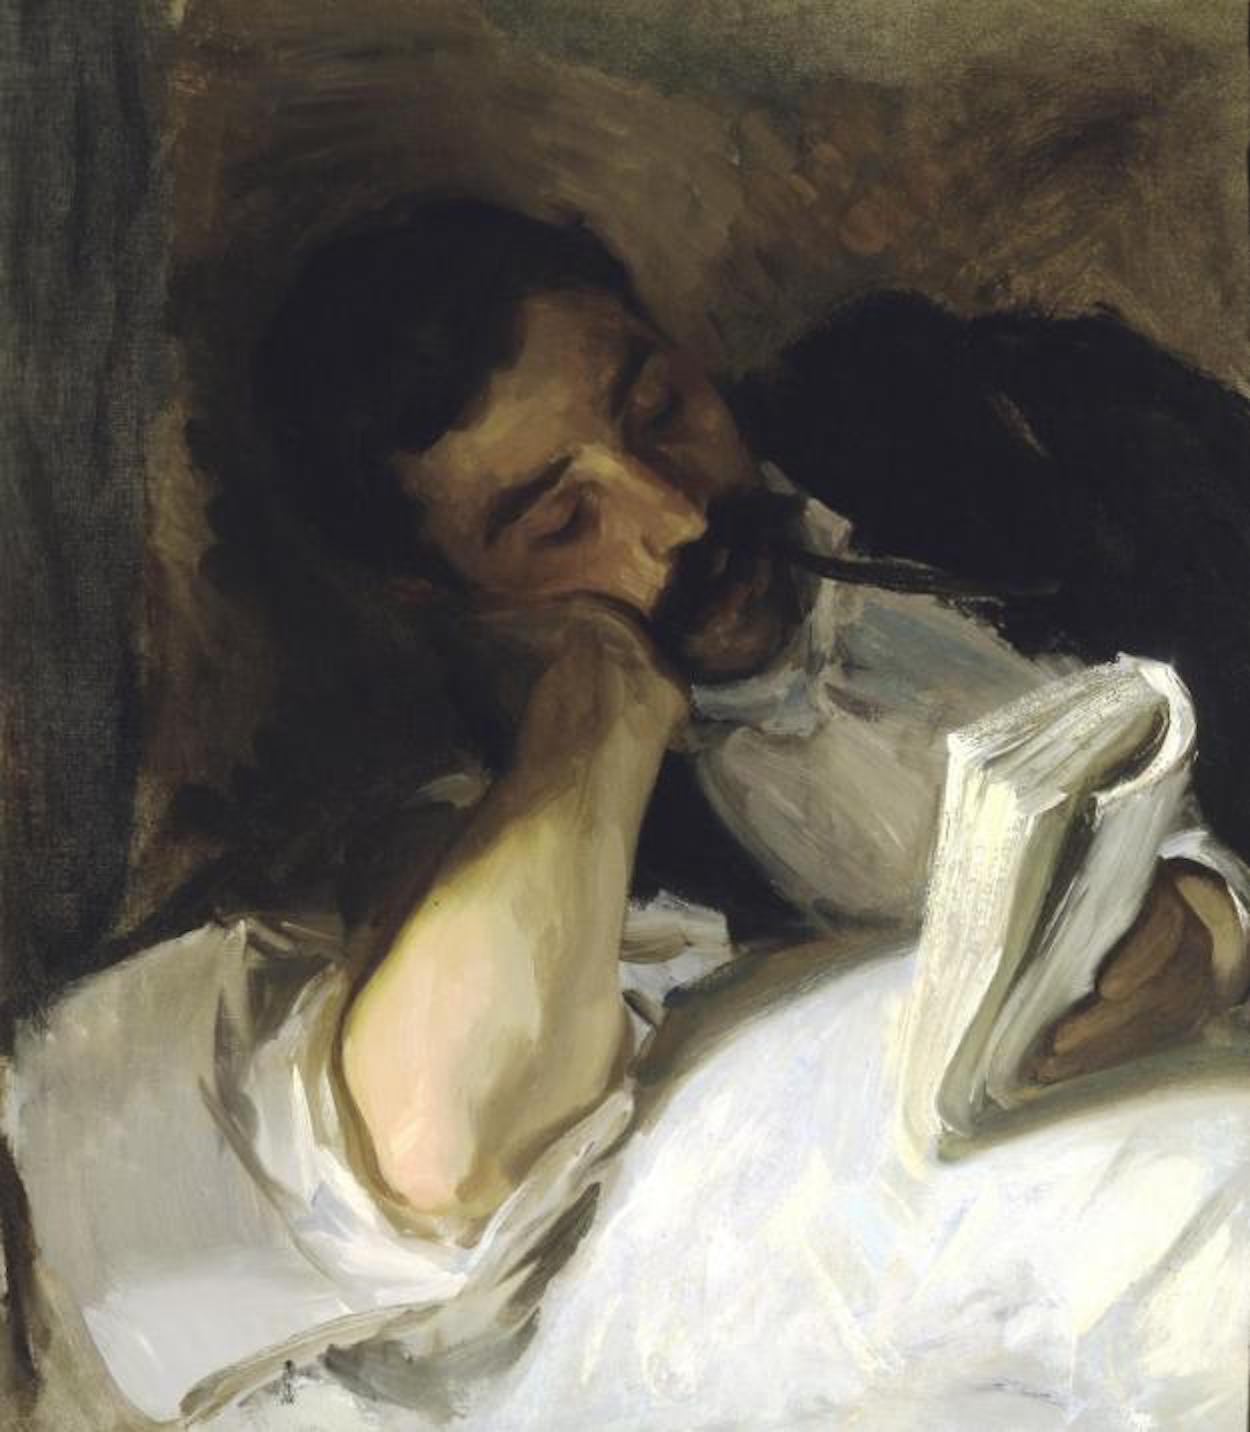 Mężczyzna czytający (Nicola d’Inverno) by John Singer Sargent - około 1904-1908 - 64.14 x 56.52 cm 